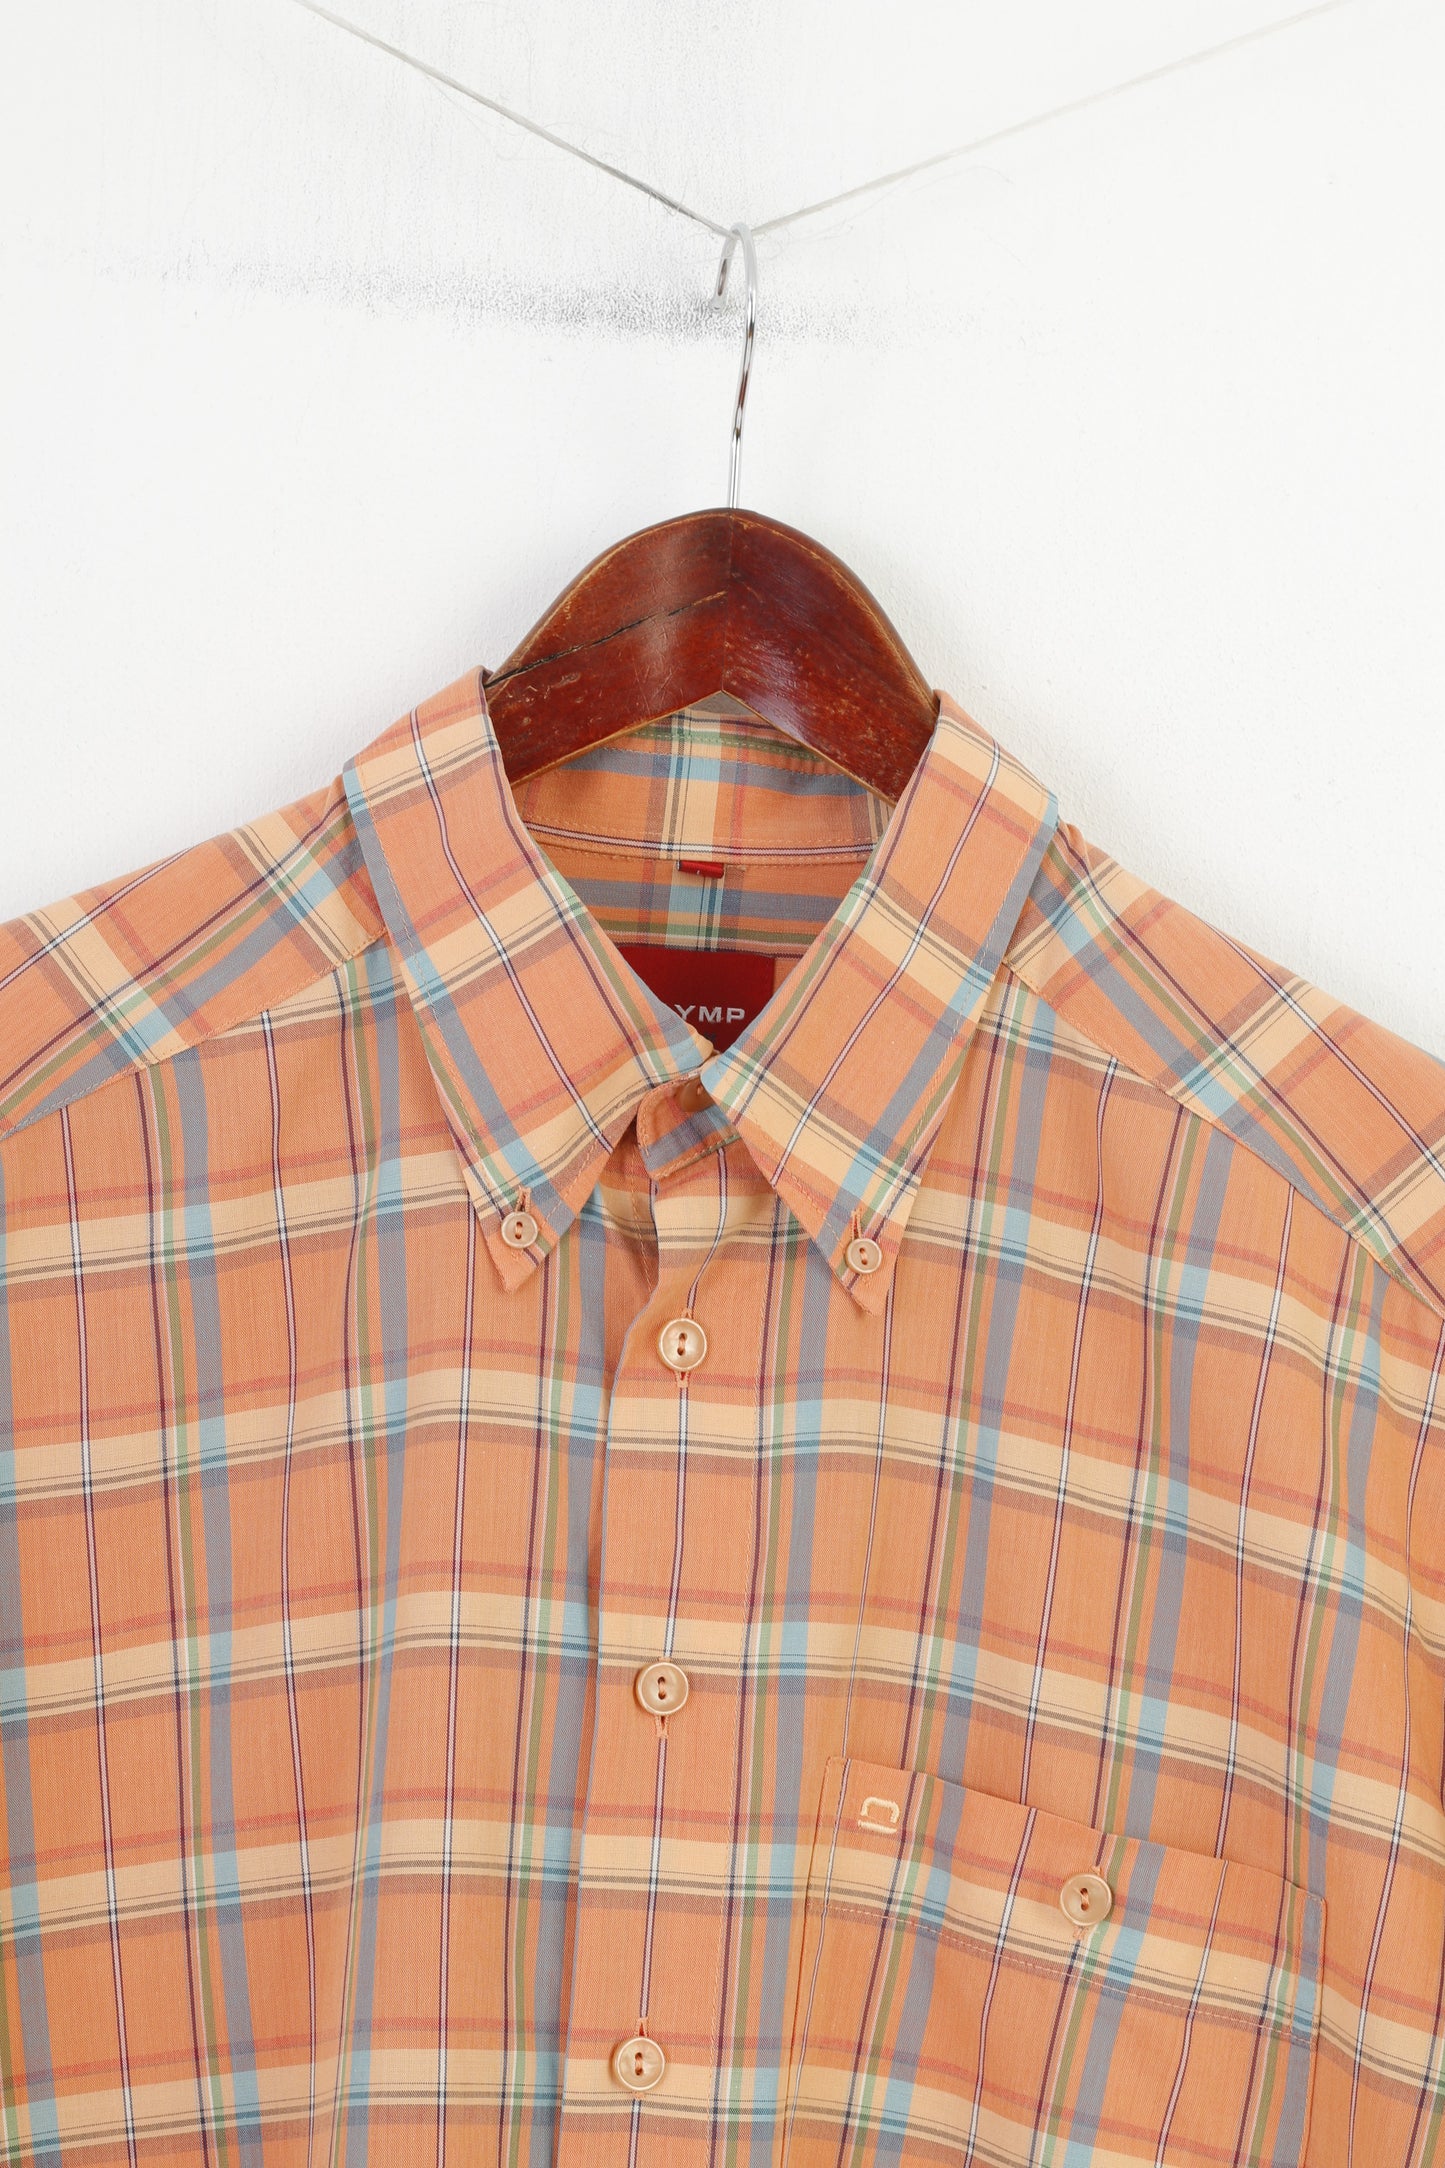 Olymp Men L Casual Shirt Short Sleeve Orange Buttons  Collar Checkered Novum Cotton